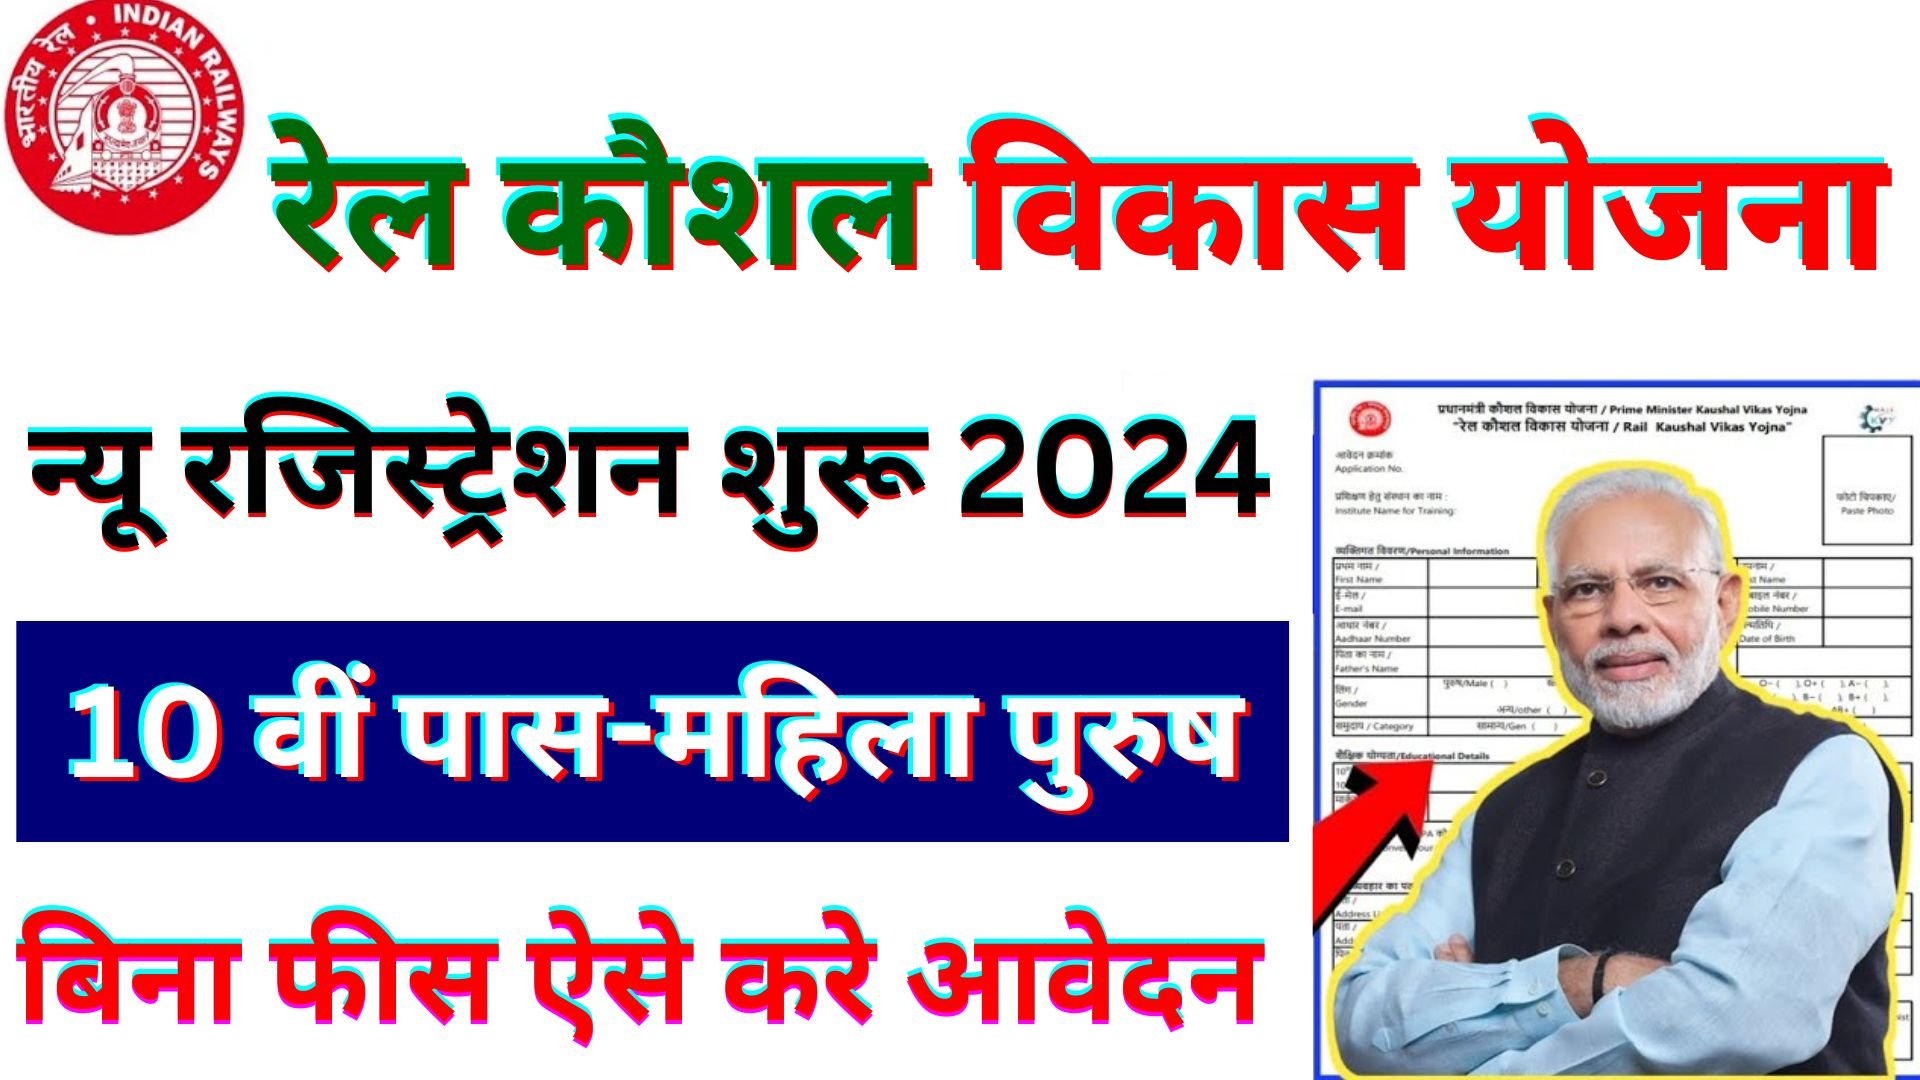 Rail Kaushal Vikas Yojana Apply Online Form 2024 : rail kaushal vikas yojna ka form kaise bhare 2024